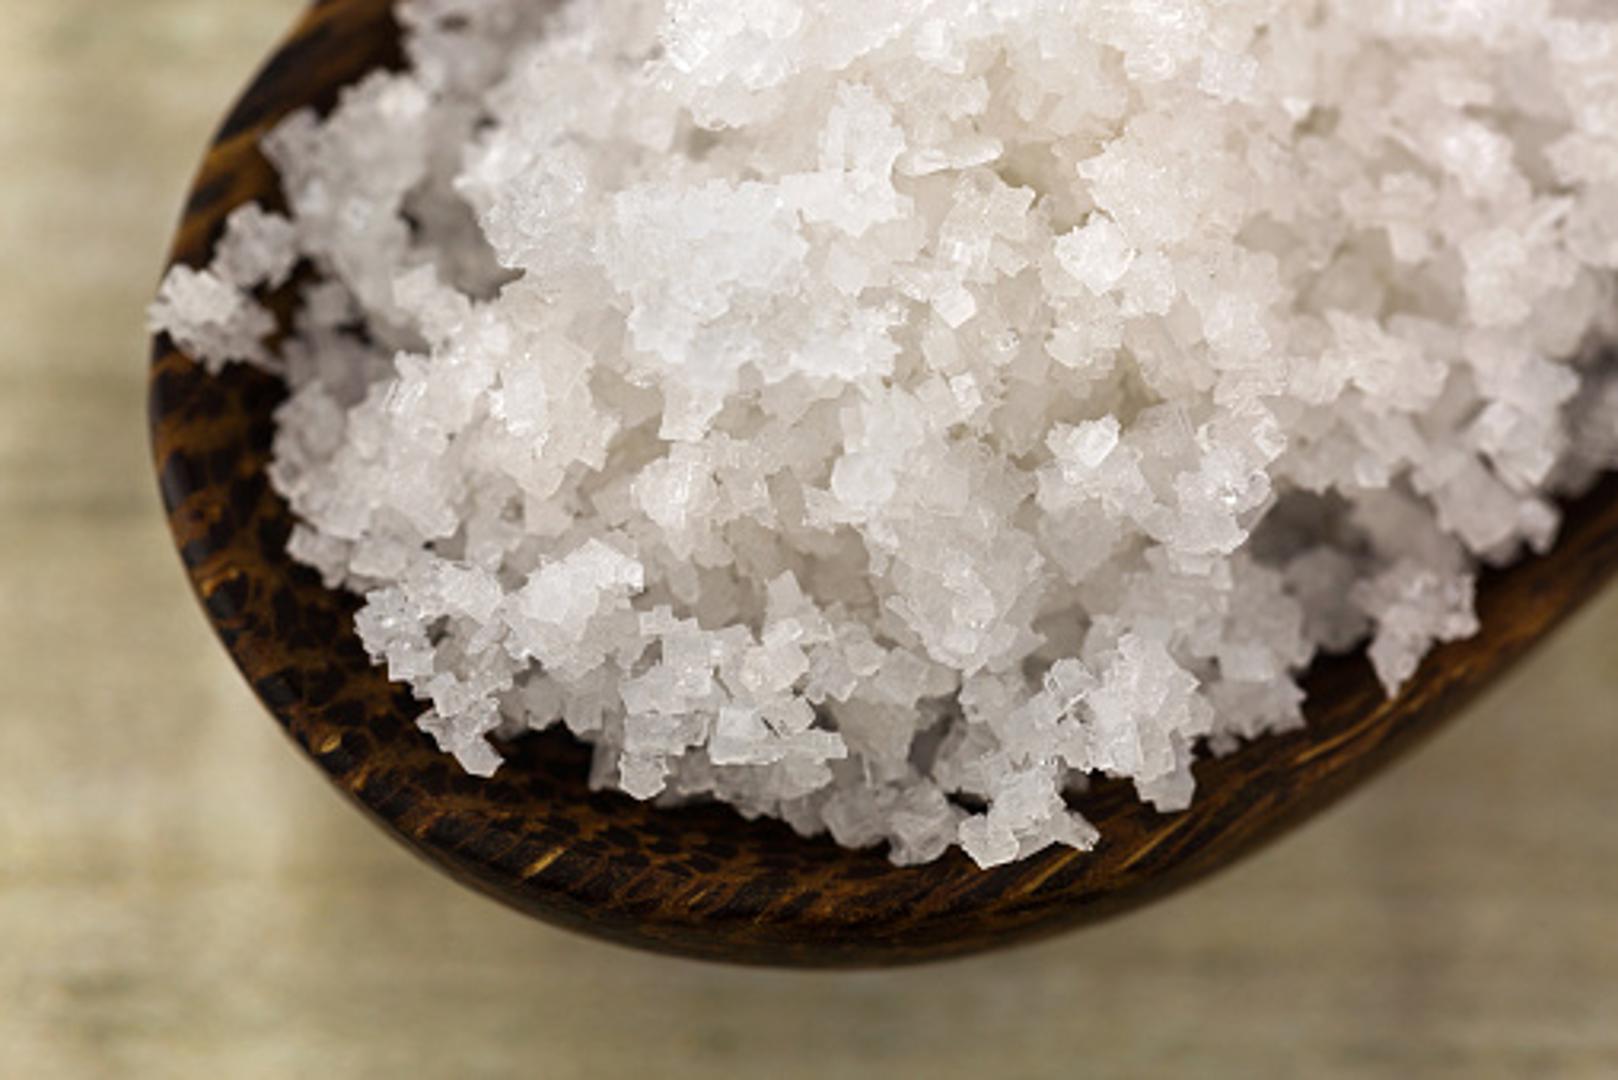 Previše soli prouzročuje i neke zdravstvene probleme, poput visokog krvnog tlaka, ali i glavobolje. 

